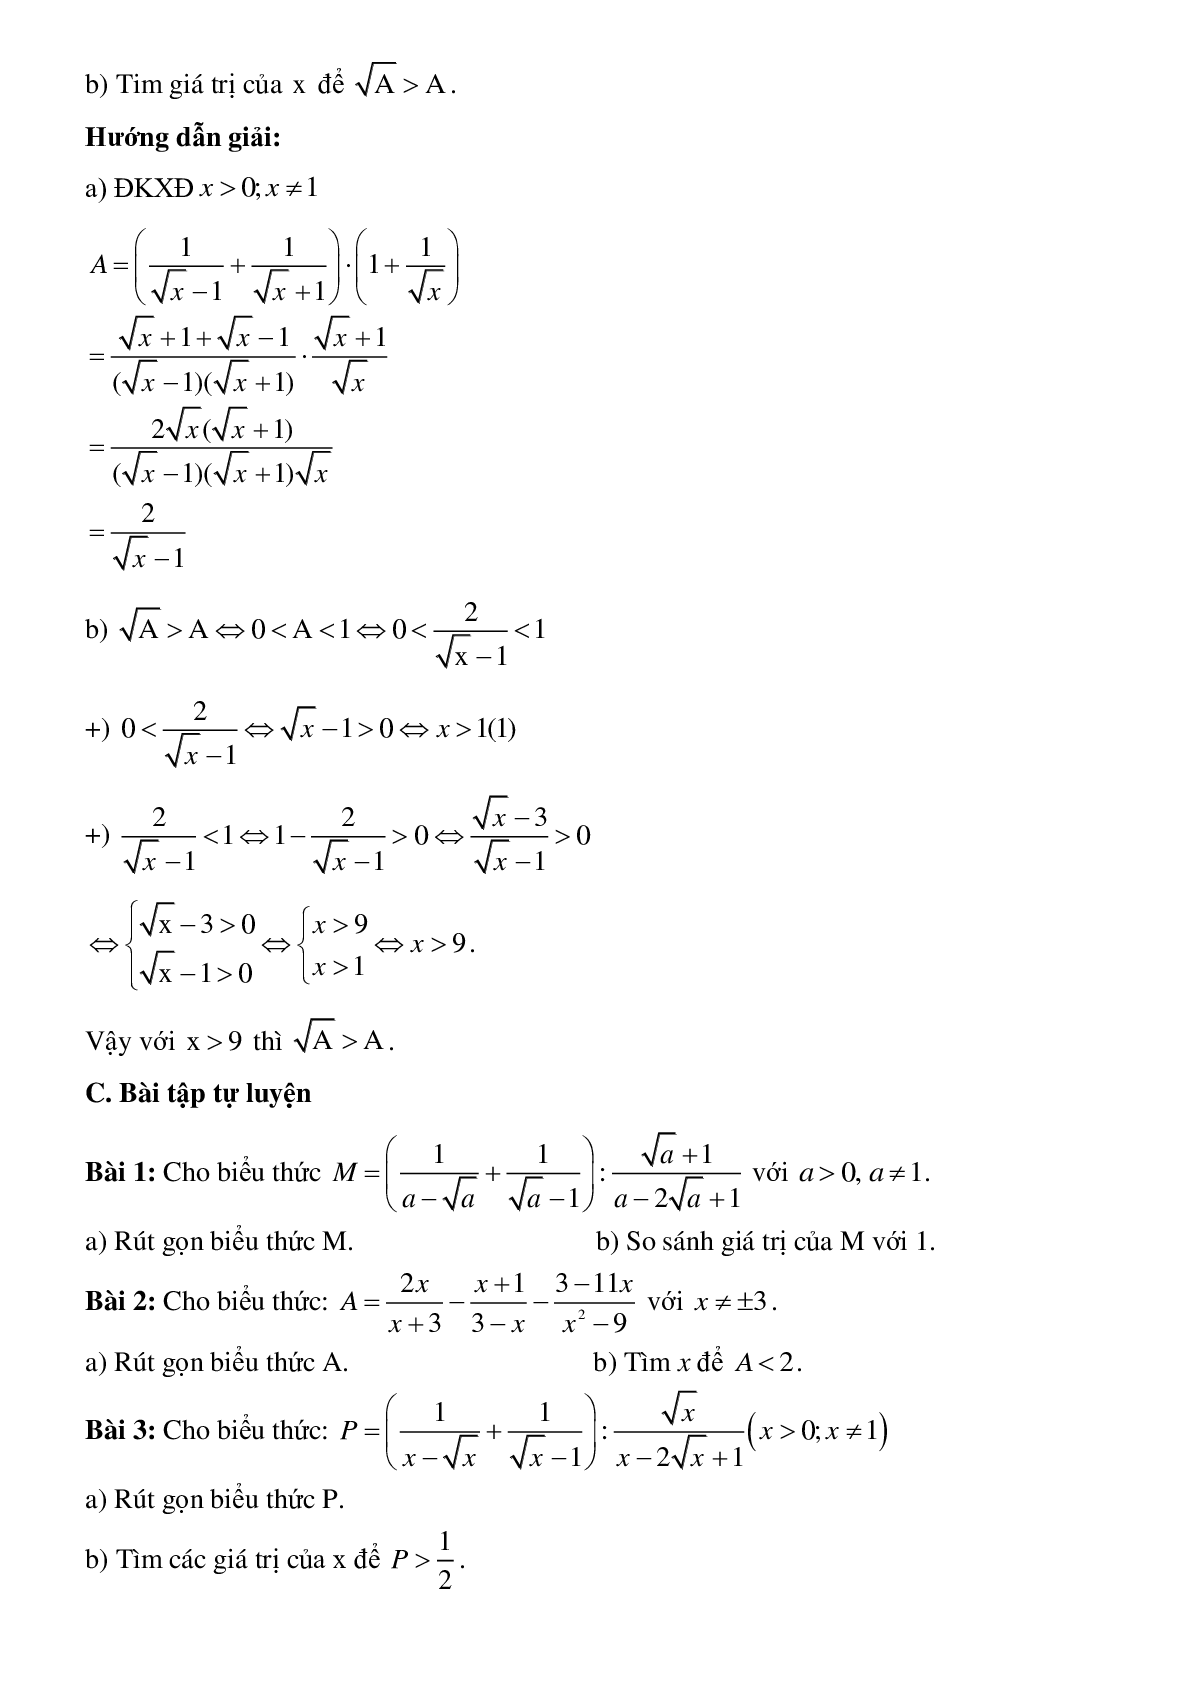 Phương pháp giải So sánh biểu thức chứa căn với một số hoặc với một biểu thức khác (trang 6)